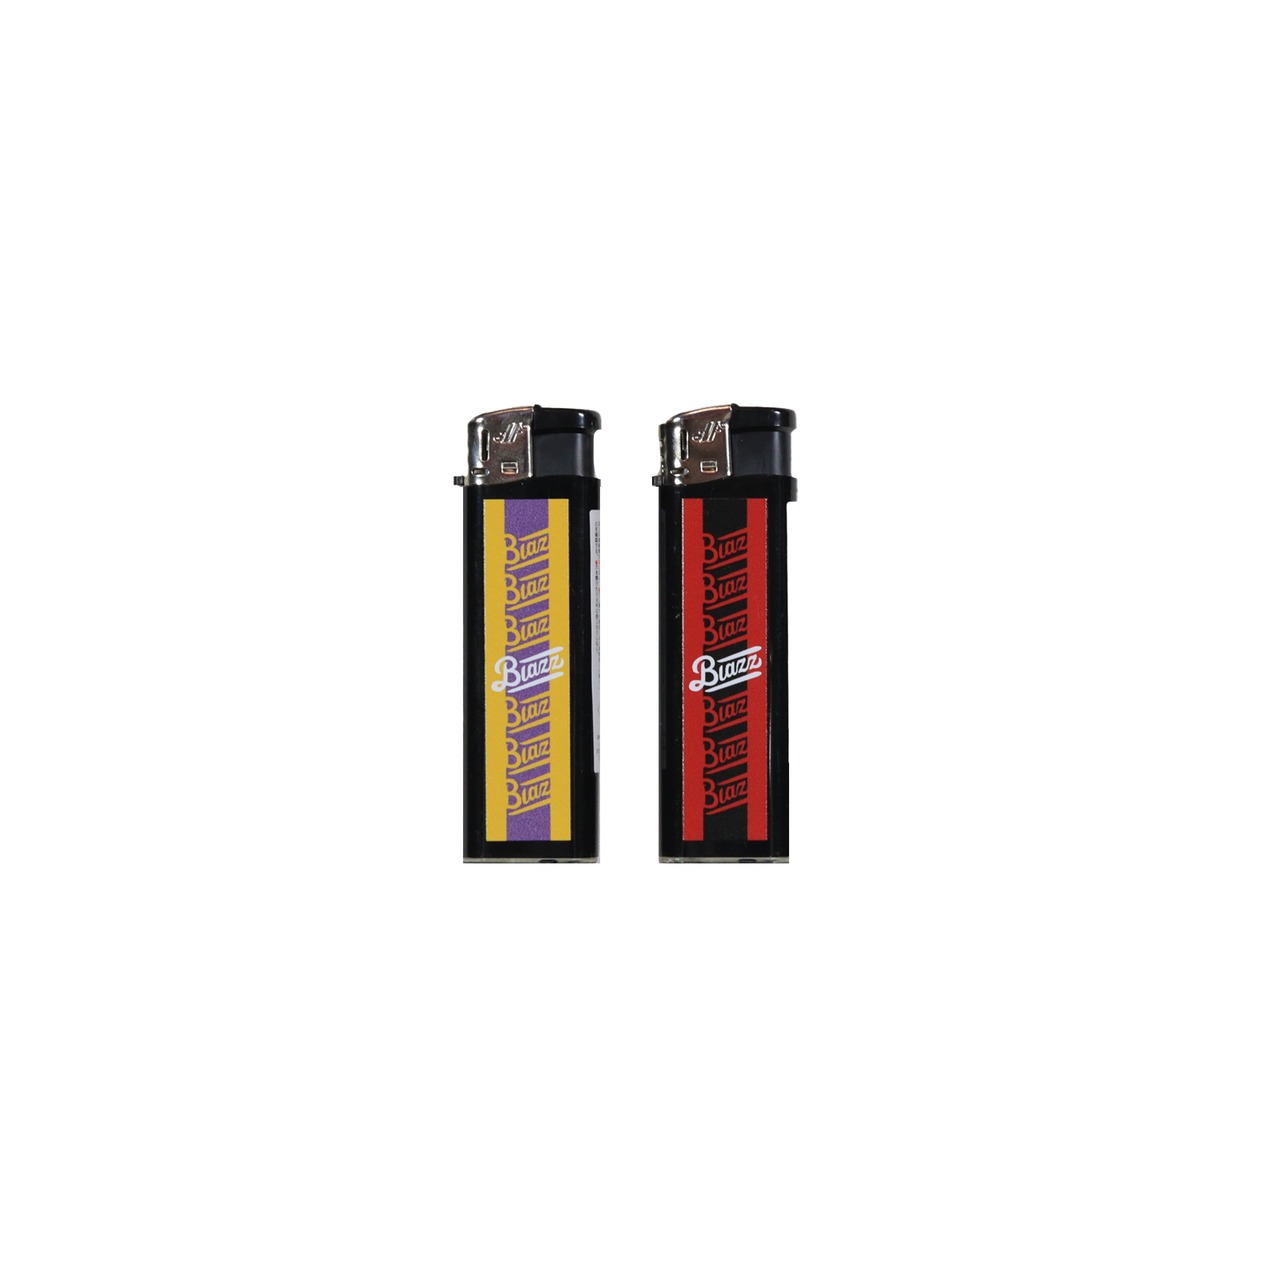 7th Anniv. LOGO Cigarette Lighter 2pieces [BLACK]